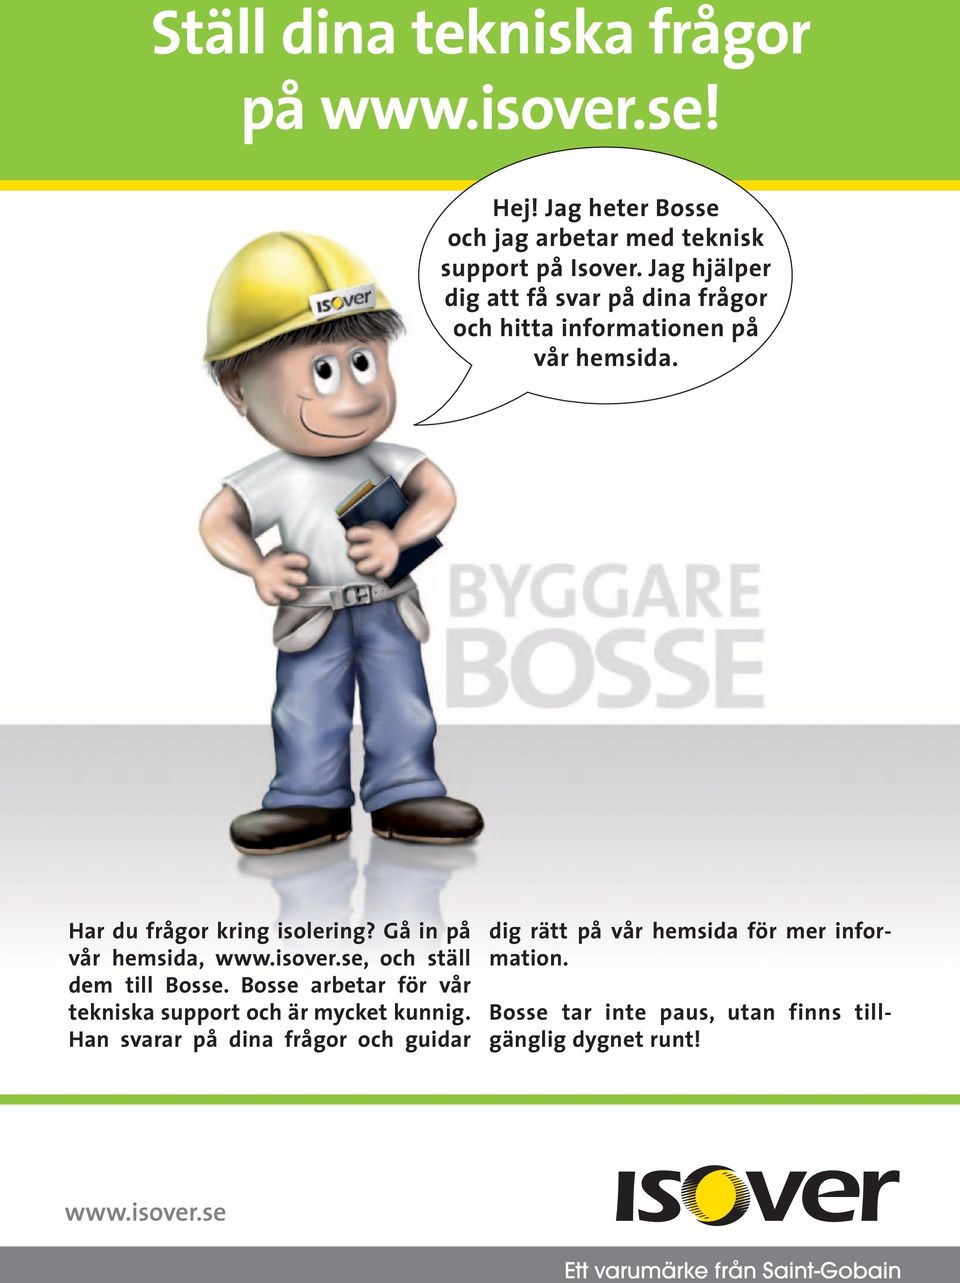 Gå in på vår hemsida, www.isover.se, och ställ dem till Bosse. Bosse arbetar för vår tekniska support och är mycket kunnig.